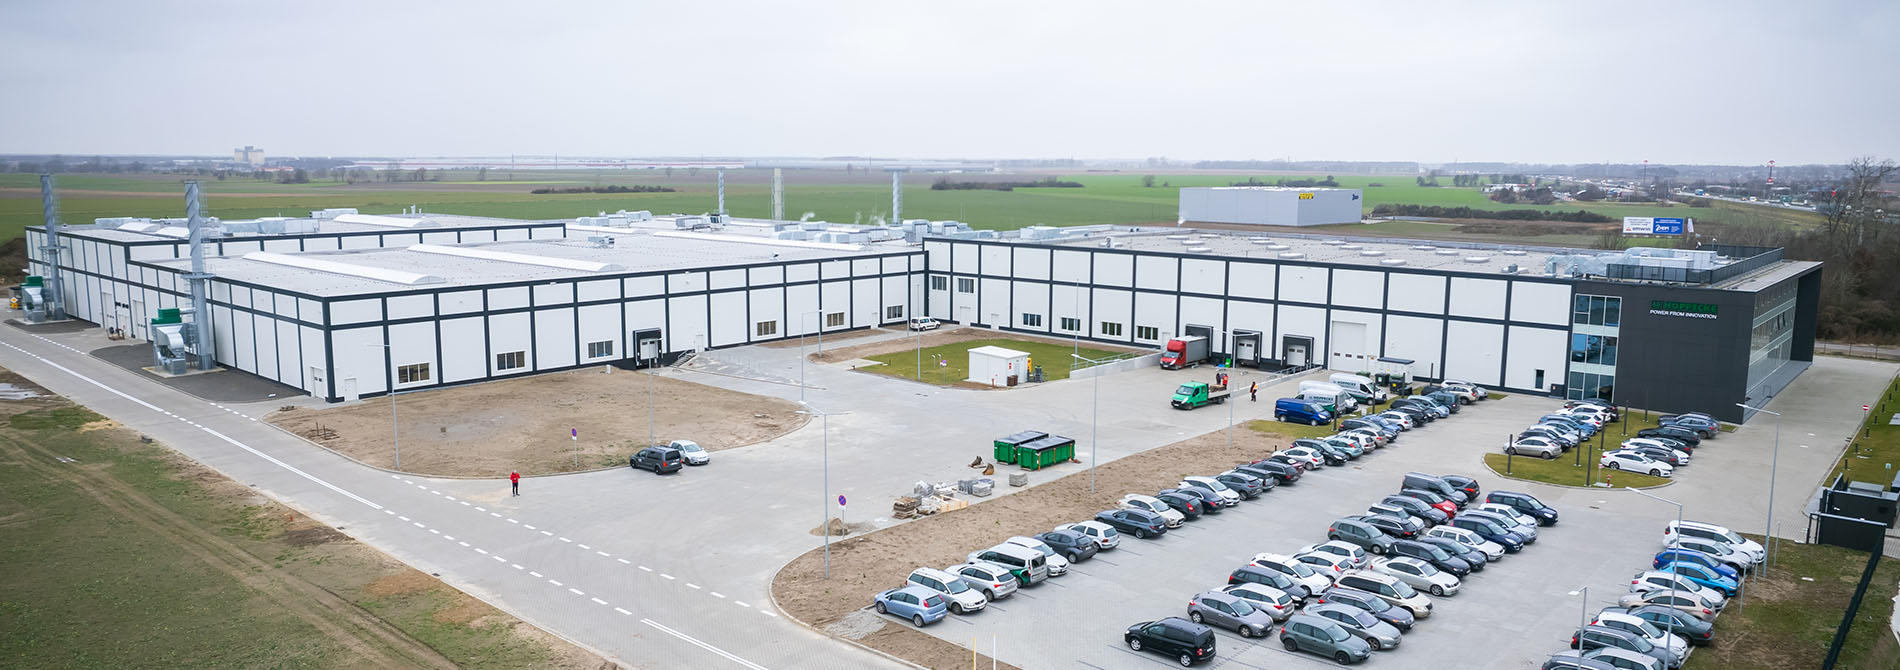 Neuer HOPPECKE Produktionsstandort in Europa für die neue Baureihe grid | Xtreme  - Dienstag, 22.02.2022